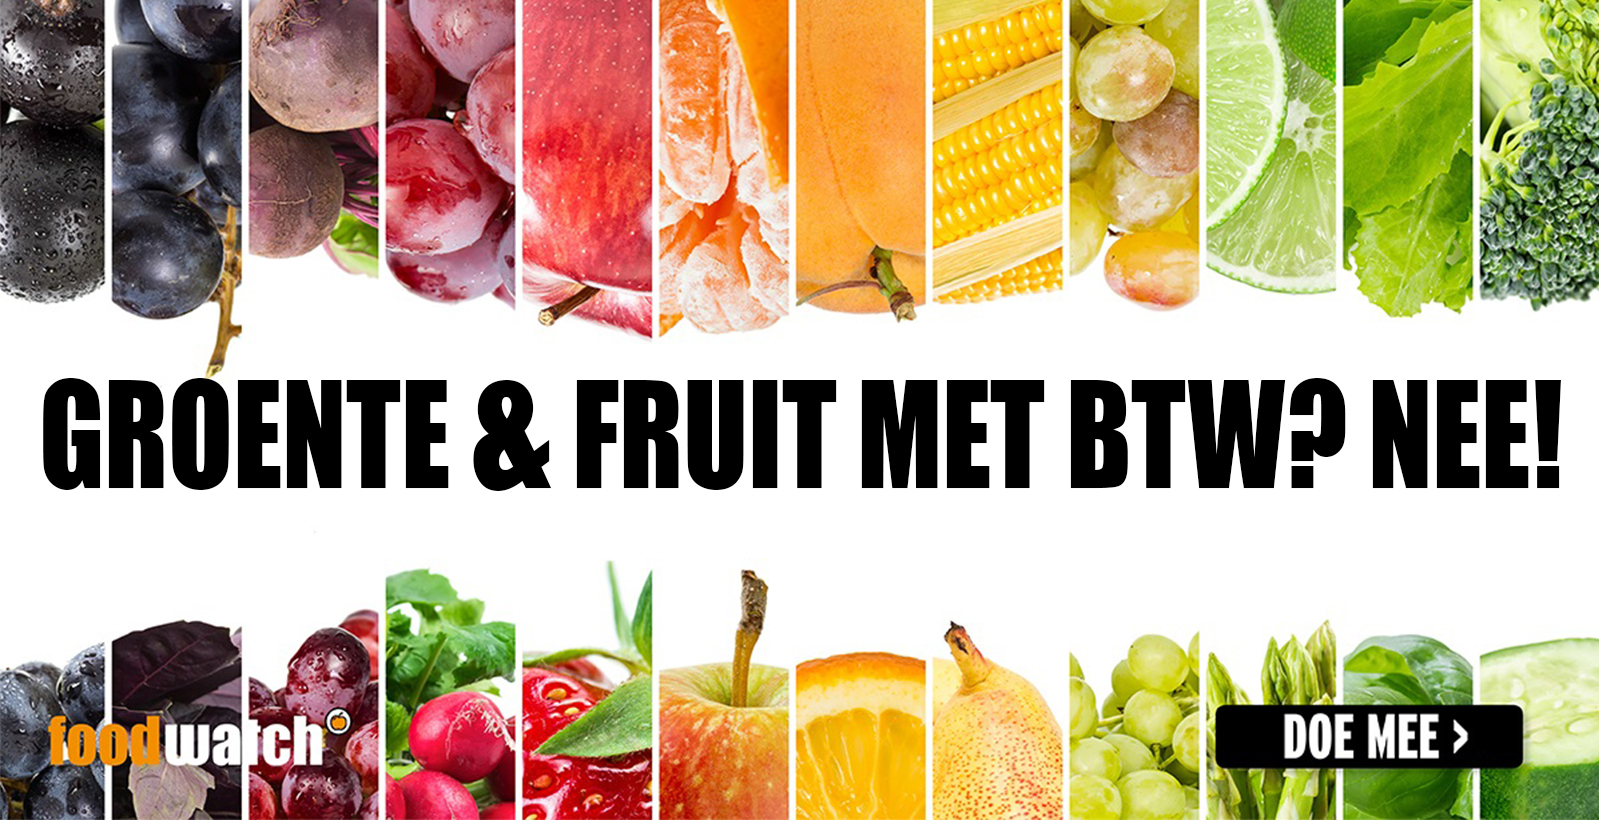 veronderstellen uit Geurig Maak groente en fruit btw-vrij!: Foodwatch NL